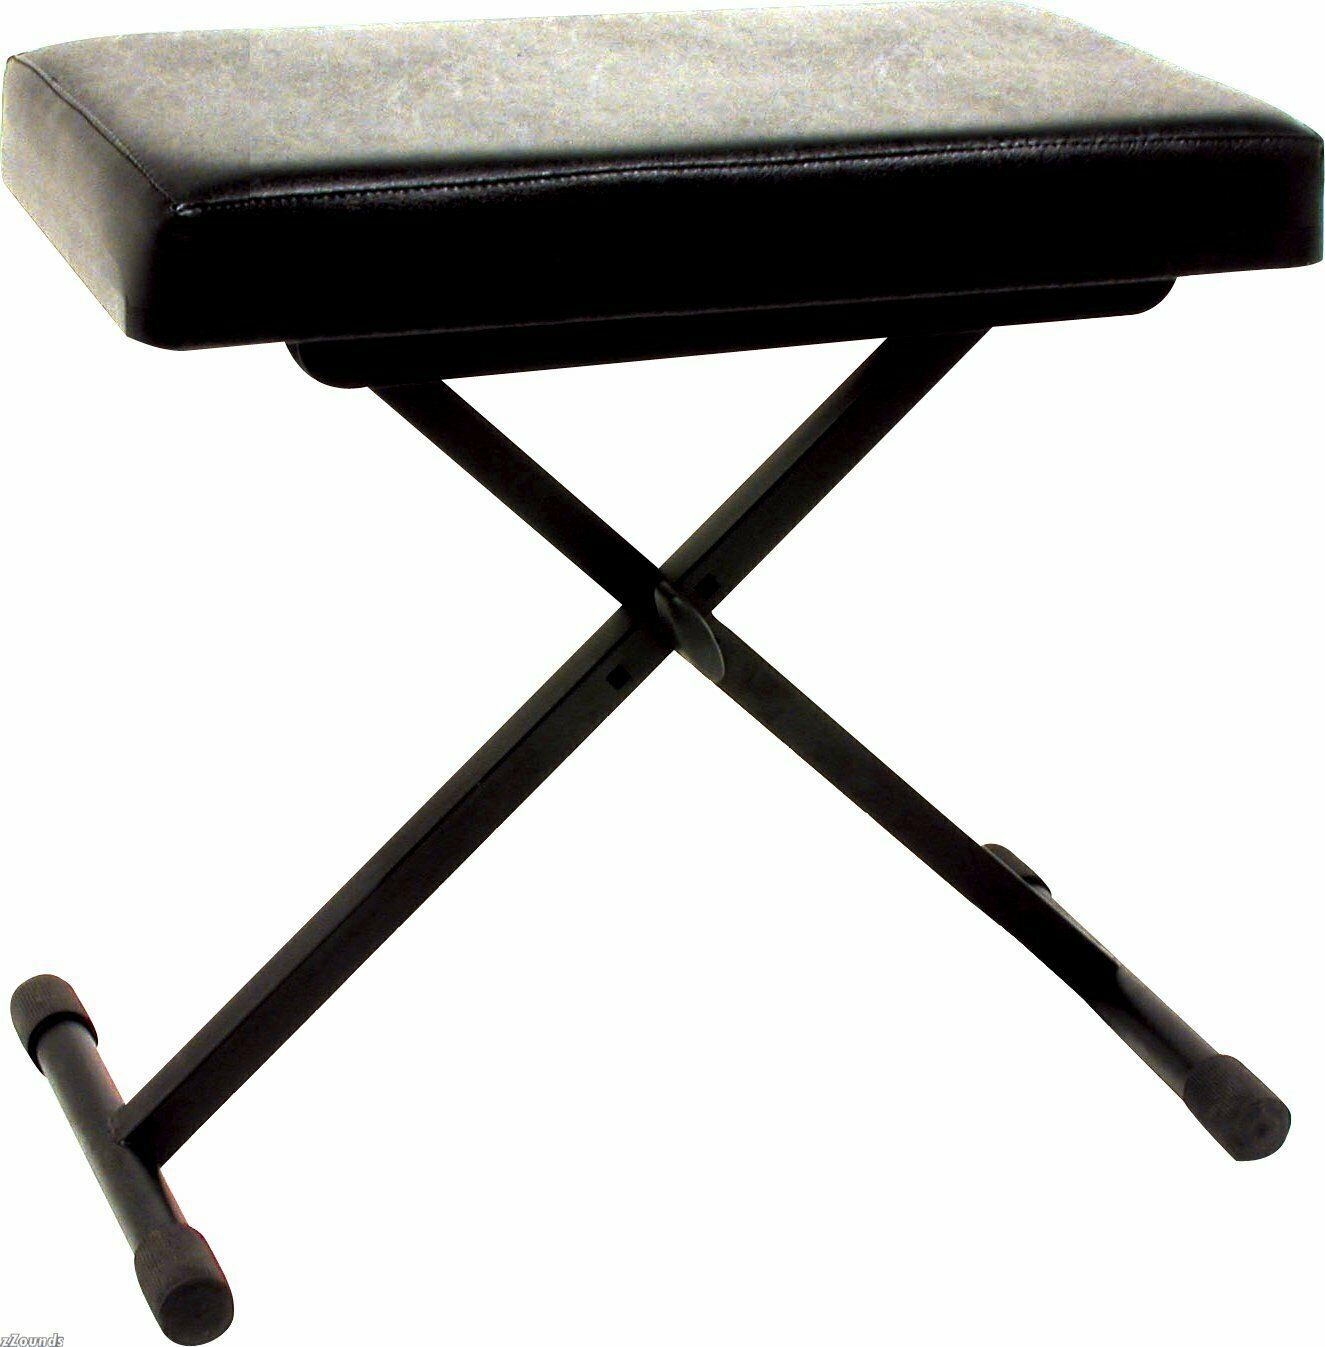 QUIK LOK BX8 стульчик пианиста с регулируемой высотой, высота от 48 до 58 см, вес до 112 кг.